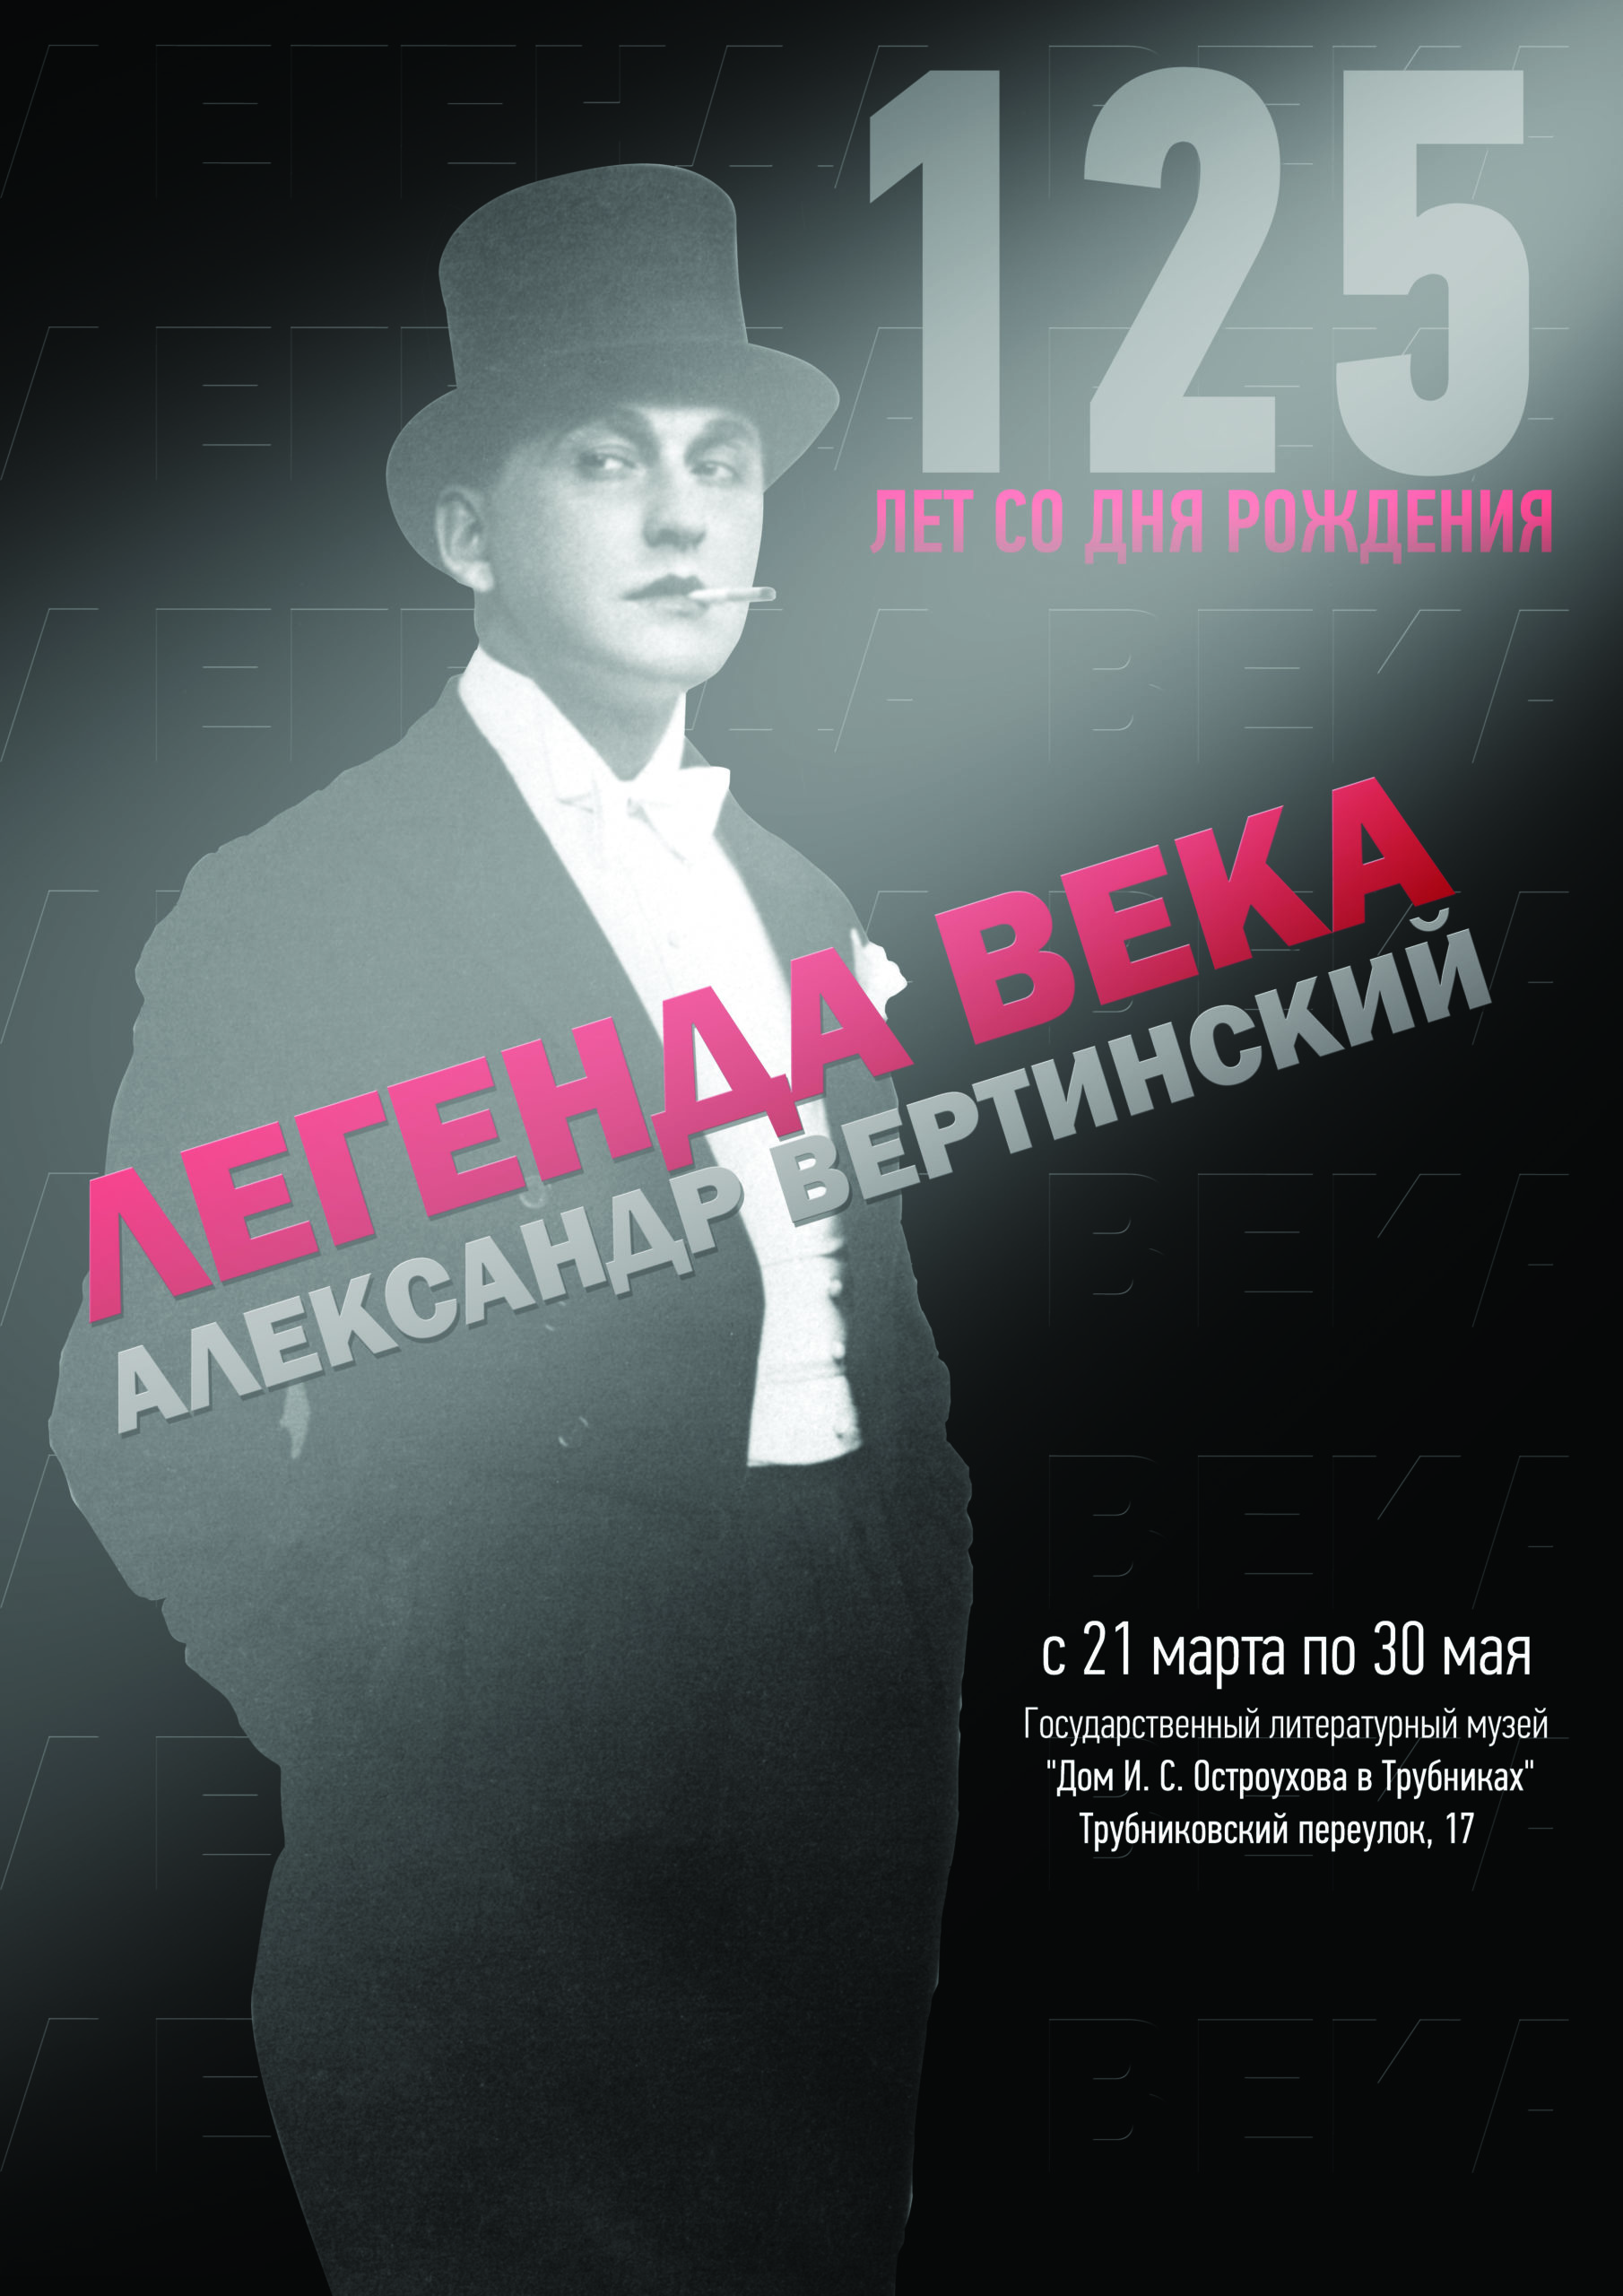 При поддержке НФПП проходит выставка «Александр Вертинский. Легенда века»